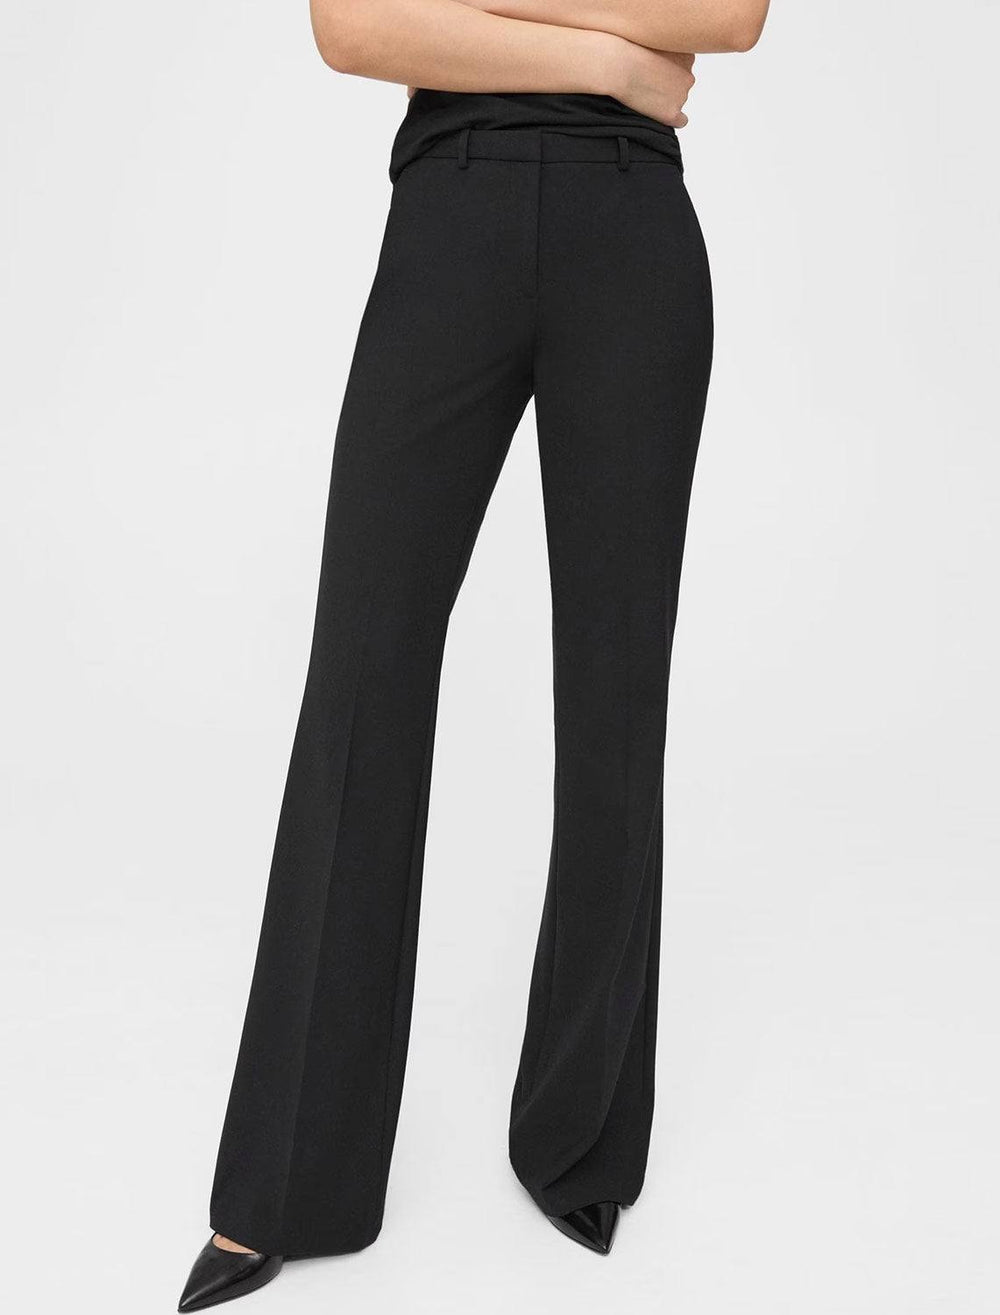 Model wearing Theory's demetria traceable wool trousers in black.